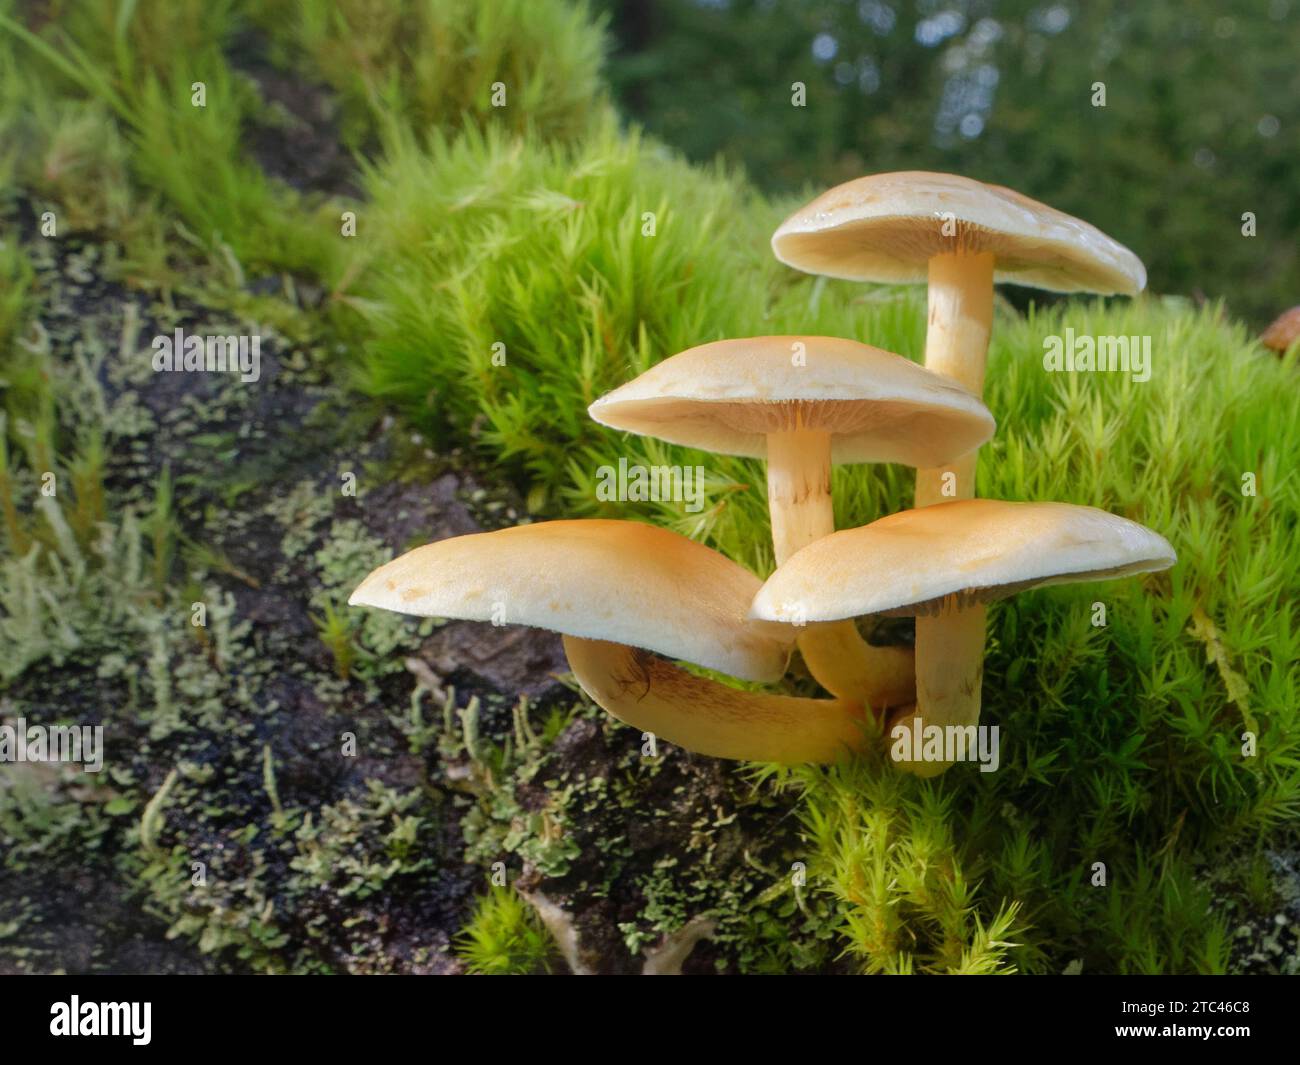 Il fungo sulfurea (Hypholoma fasciculare) cresce su un tronco marciante ricoperto di muschio in boschi decidui, Gloucestershire, Regno Unito, ottobre. Foto Stock